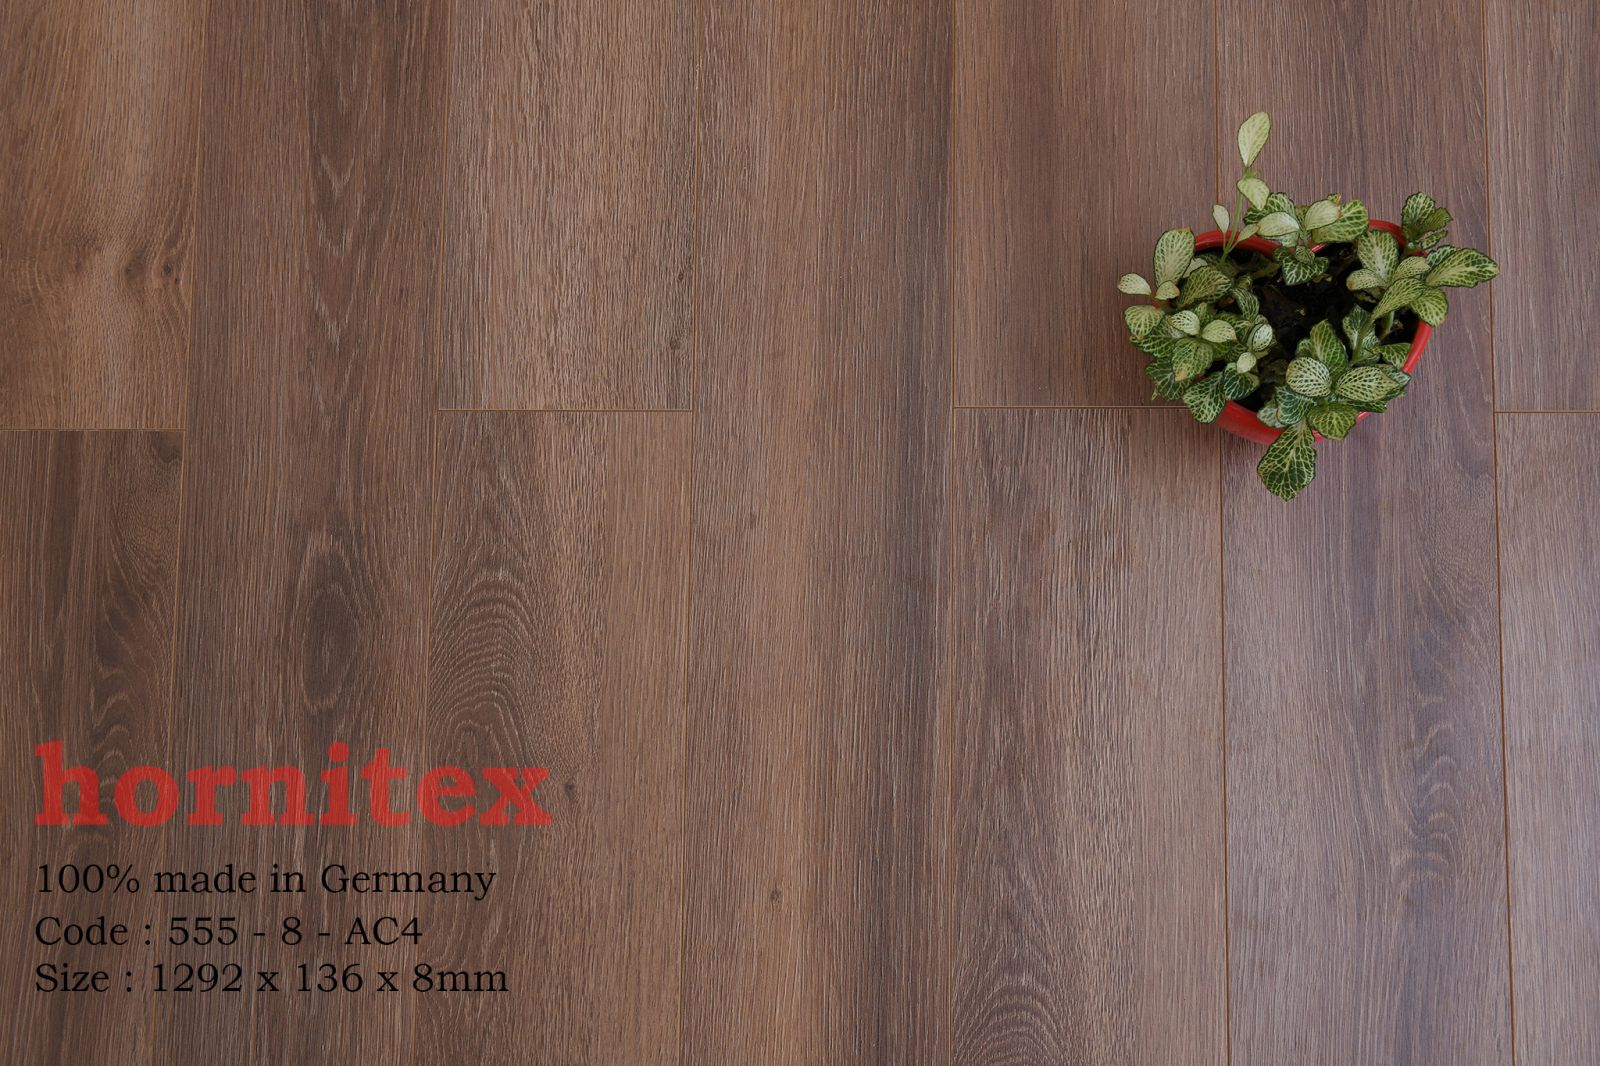 Sàn gỗ công nghiệp Hornitex 558-8- AC4 